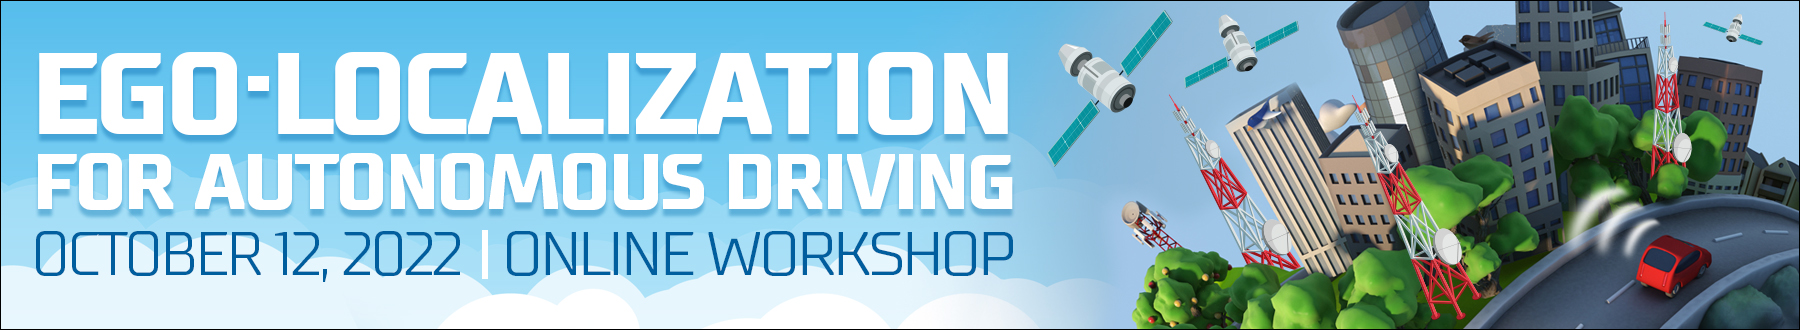 Ego-Localization for Autonomous Driving Workshop 2022